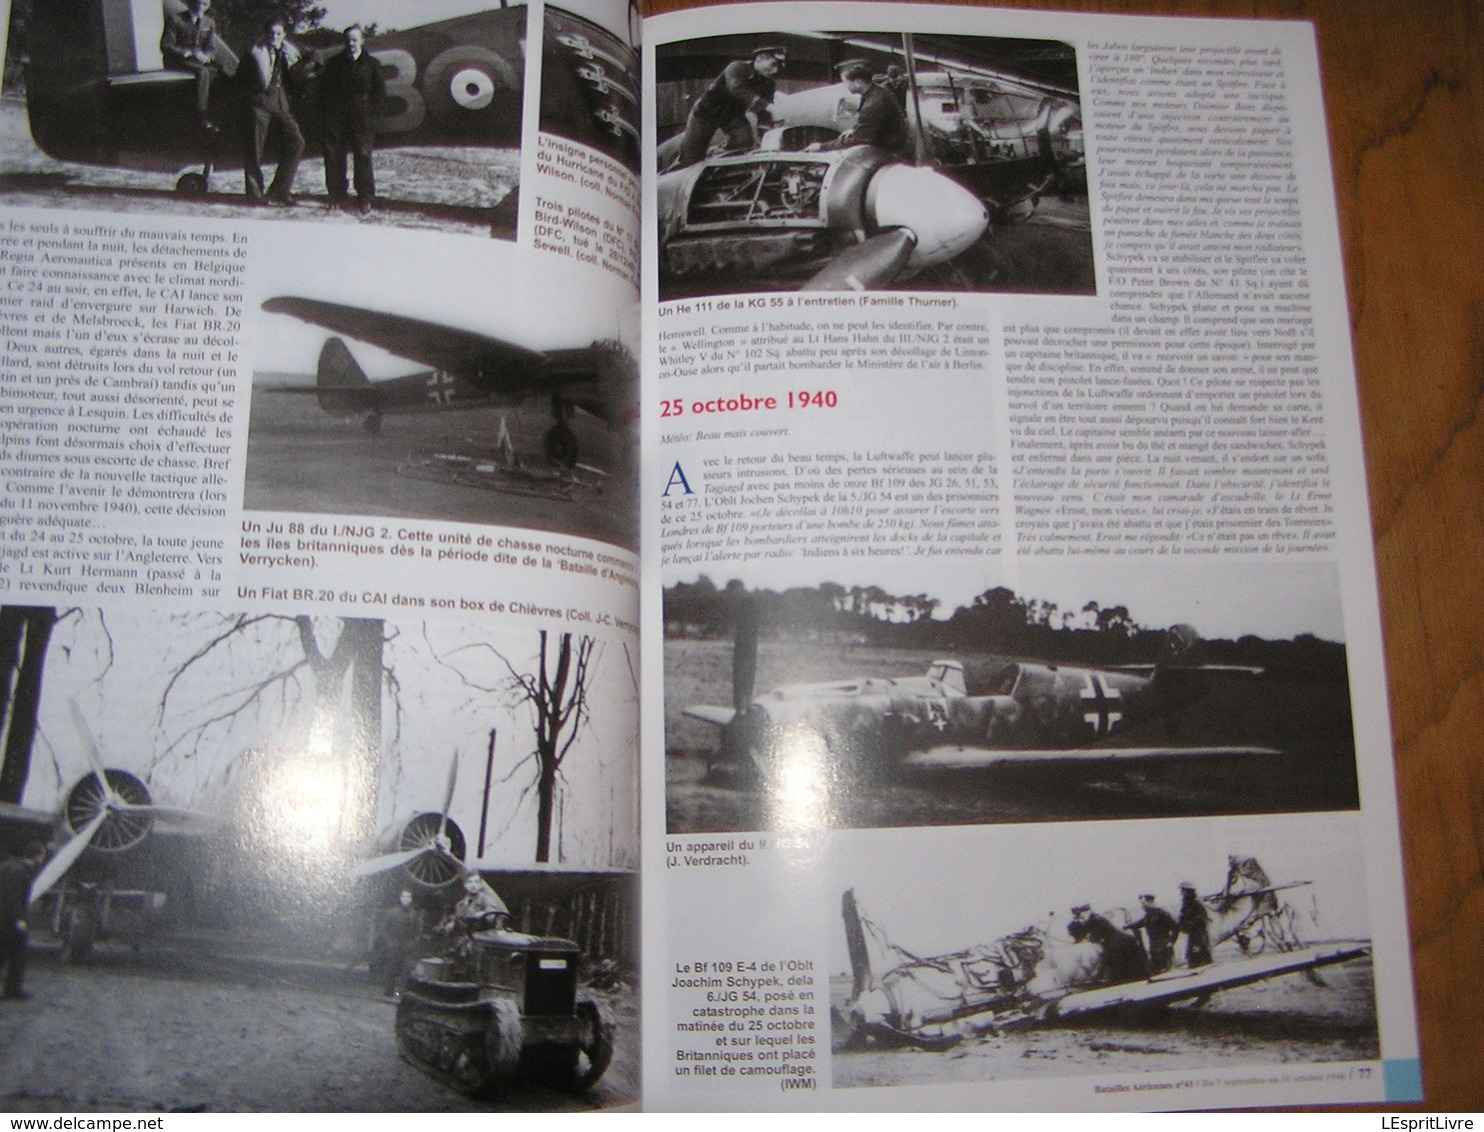 BATAILLES AERIENNES N° 41 Guerre 40 45 Bataille d'Angleterre 3 ème Partie Aviation Raf Luftwaffe Avion Aircraft Armée